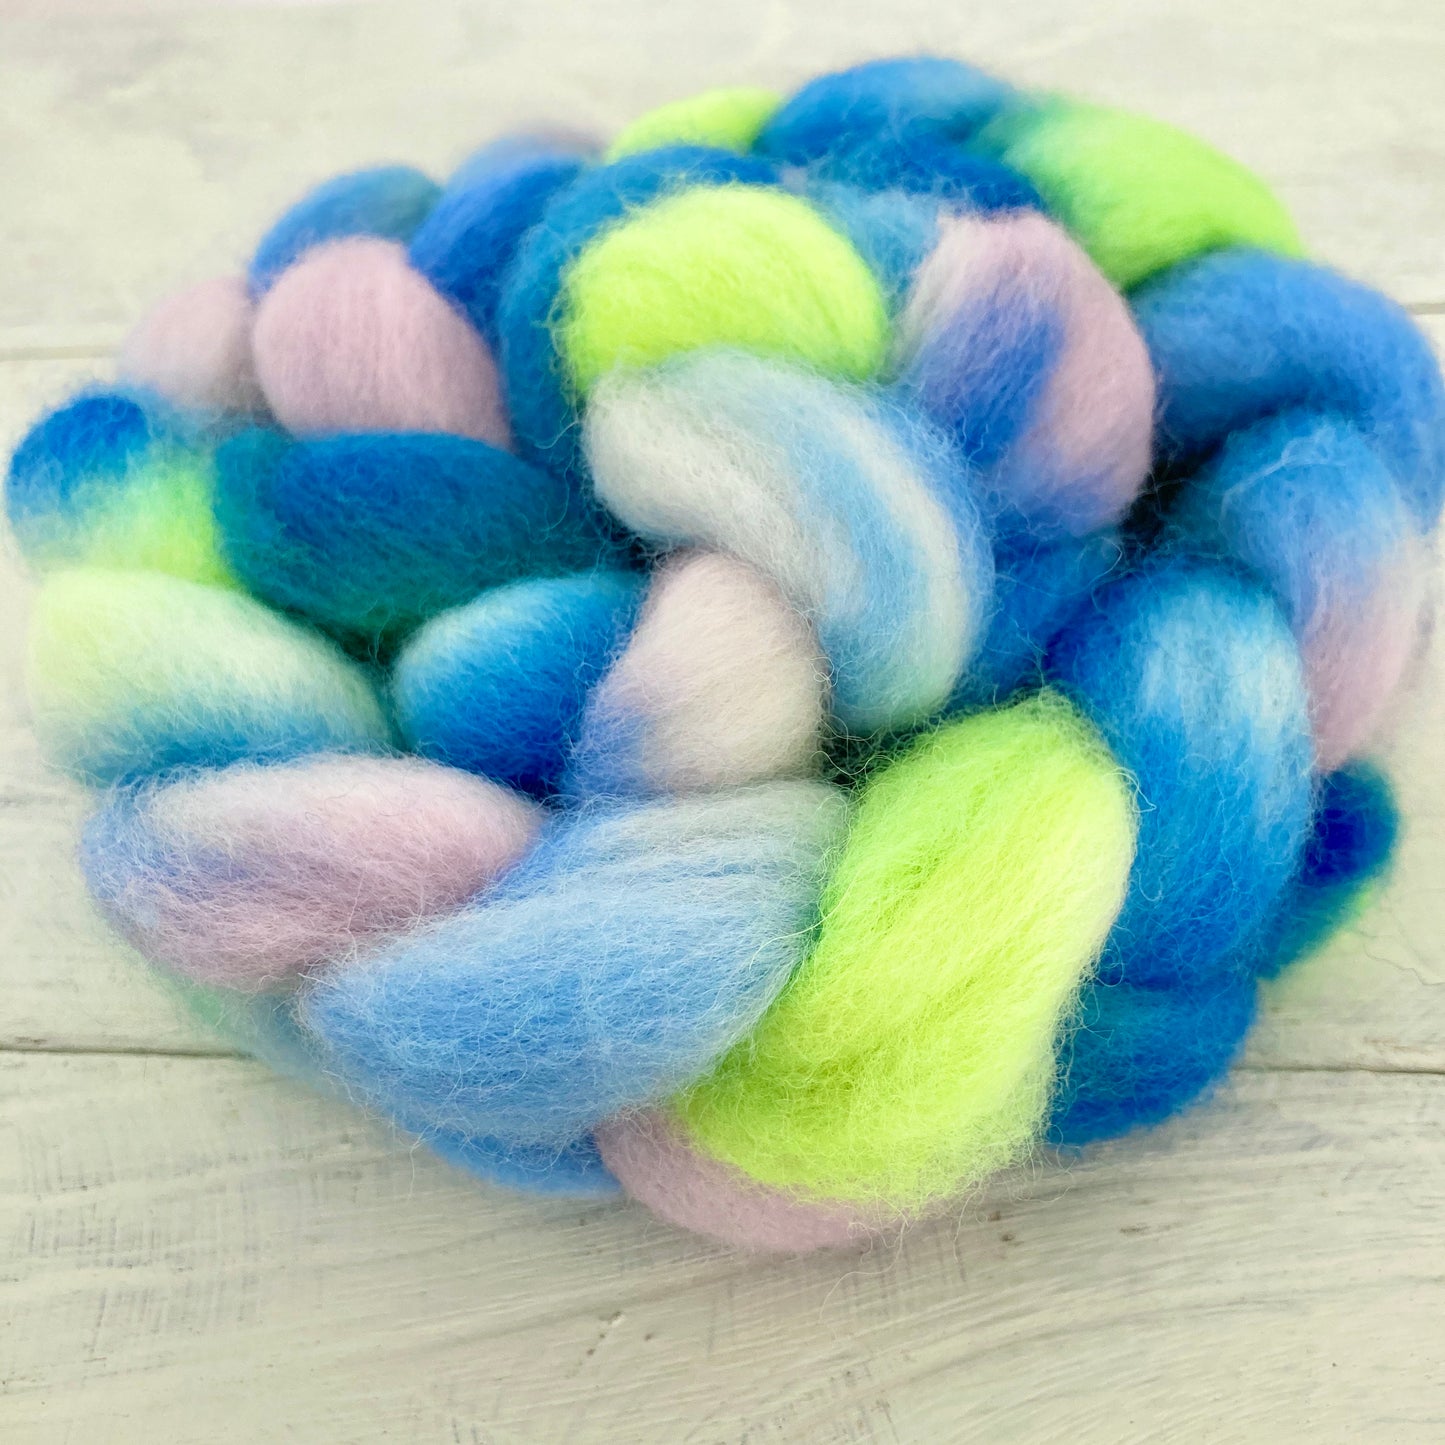 Hand-dyed wool No.5 Romney "Der Blumenbrief"